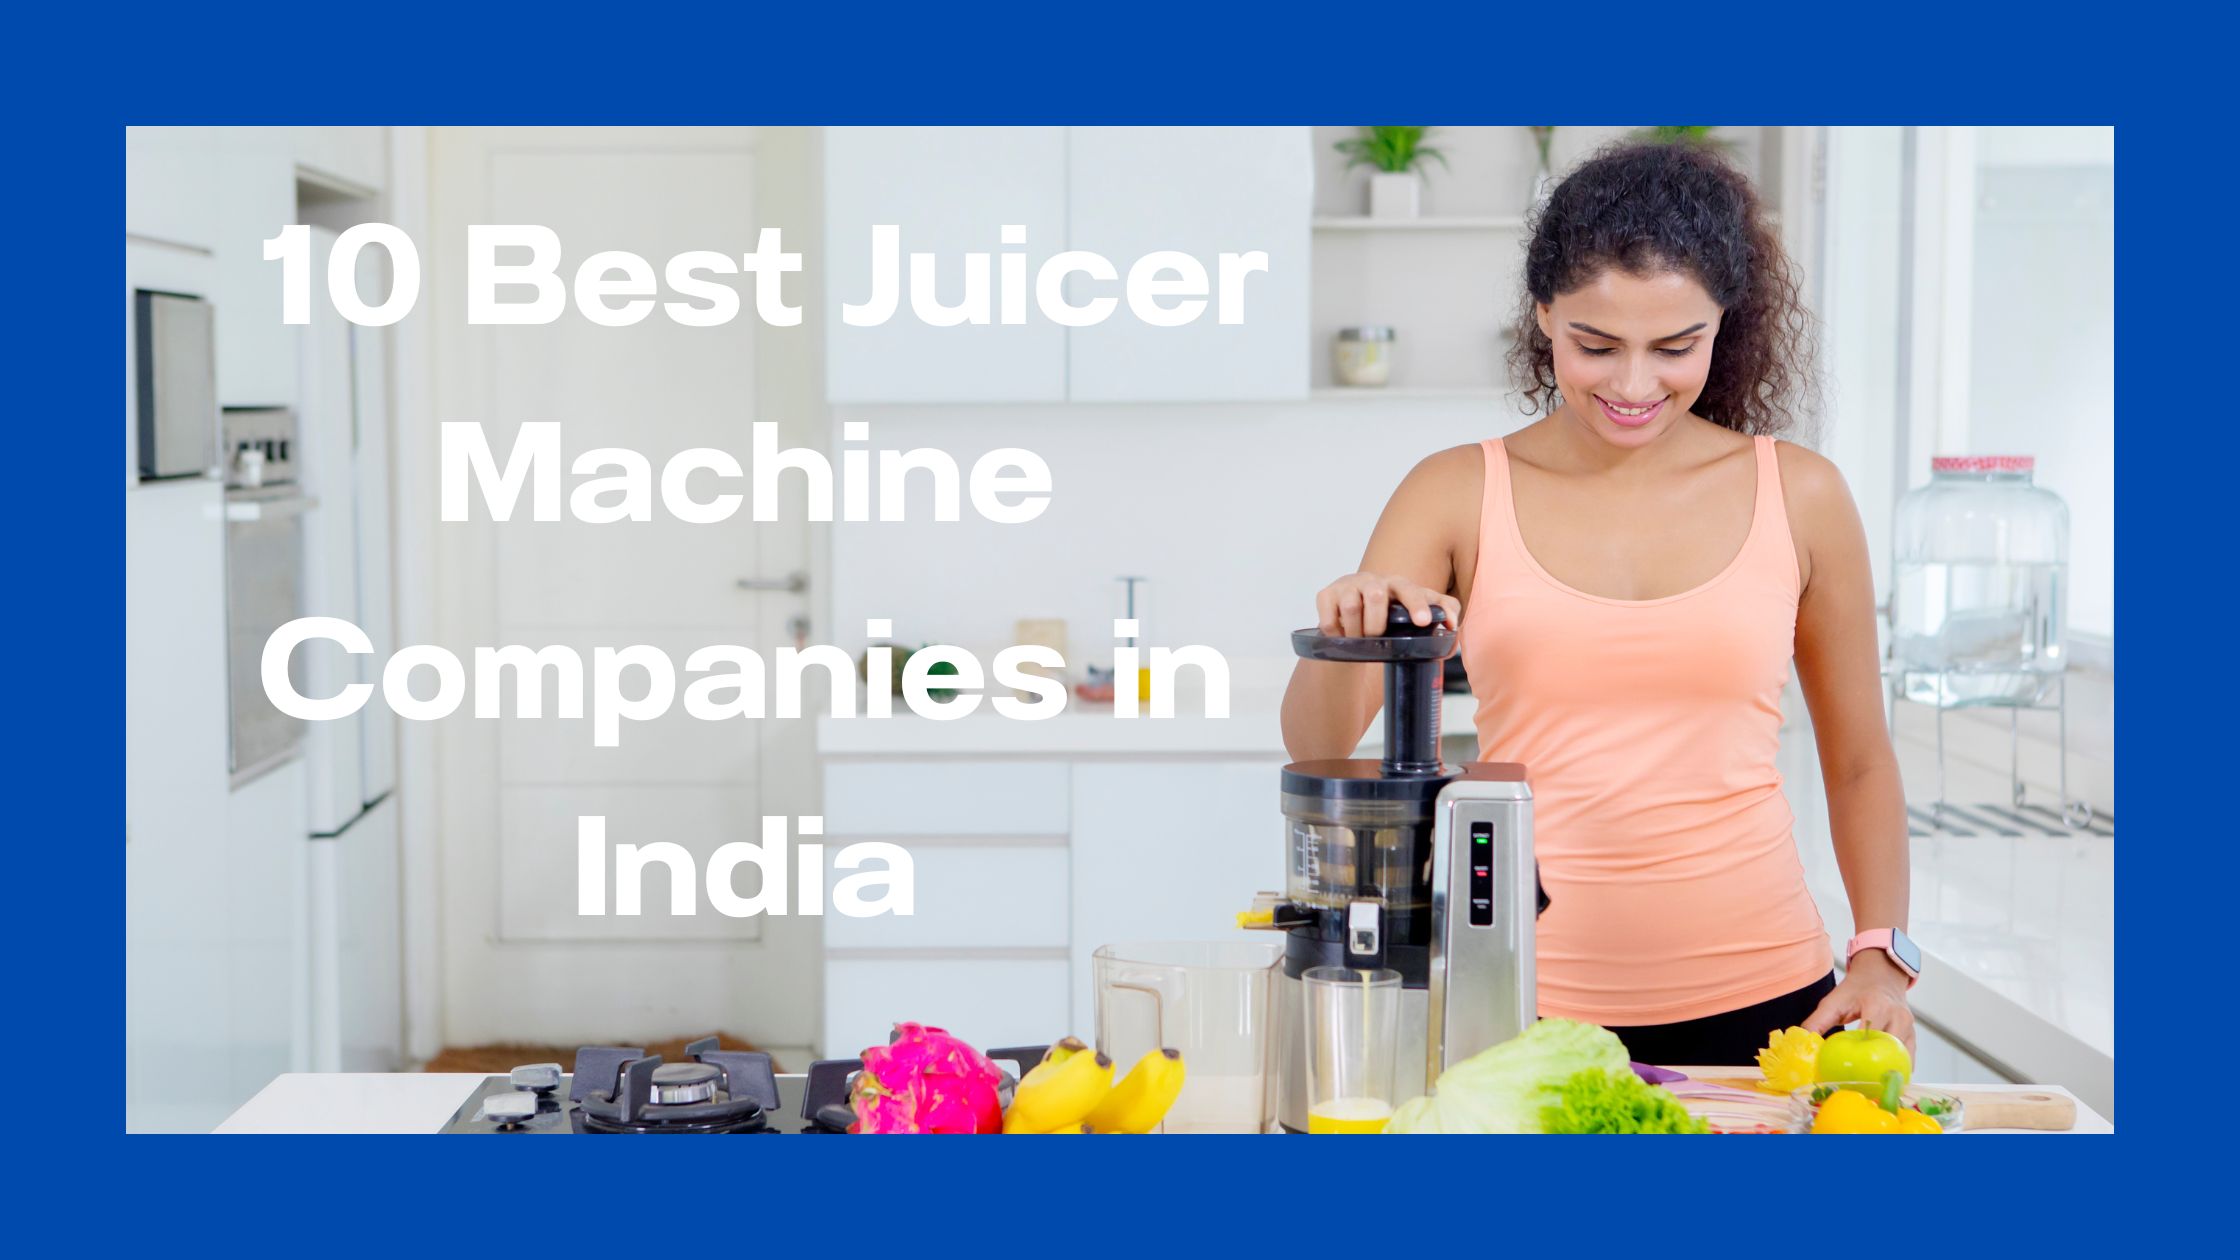 Best Juicers Machine in India